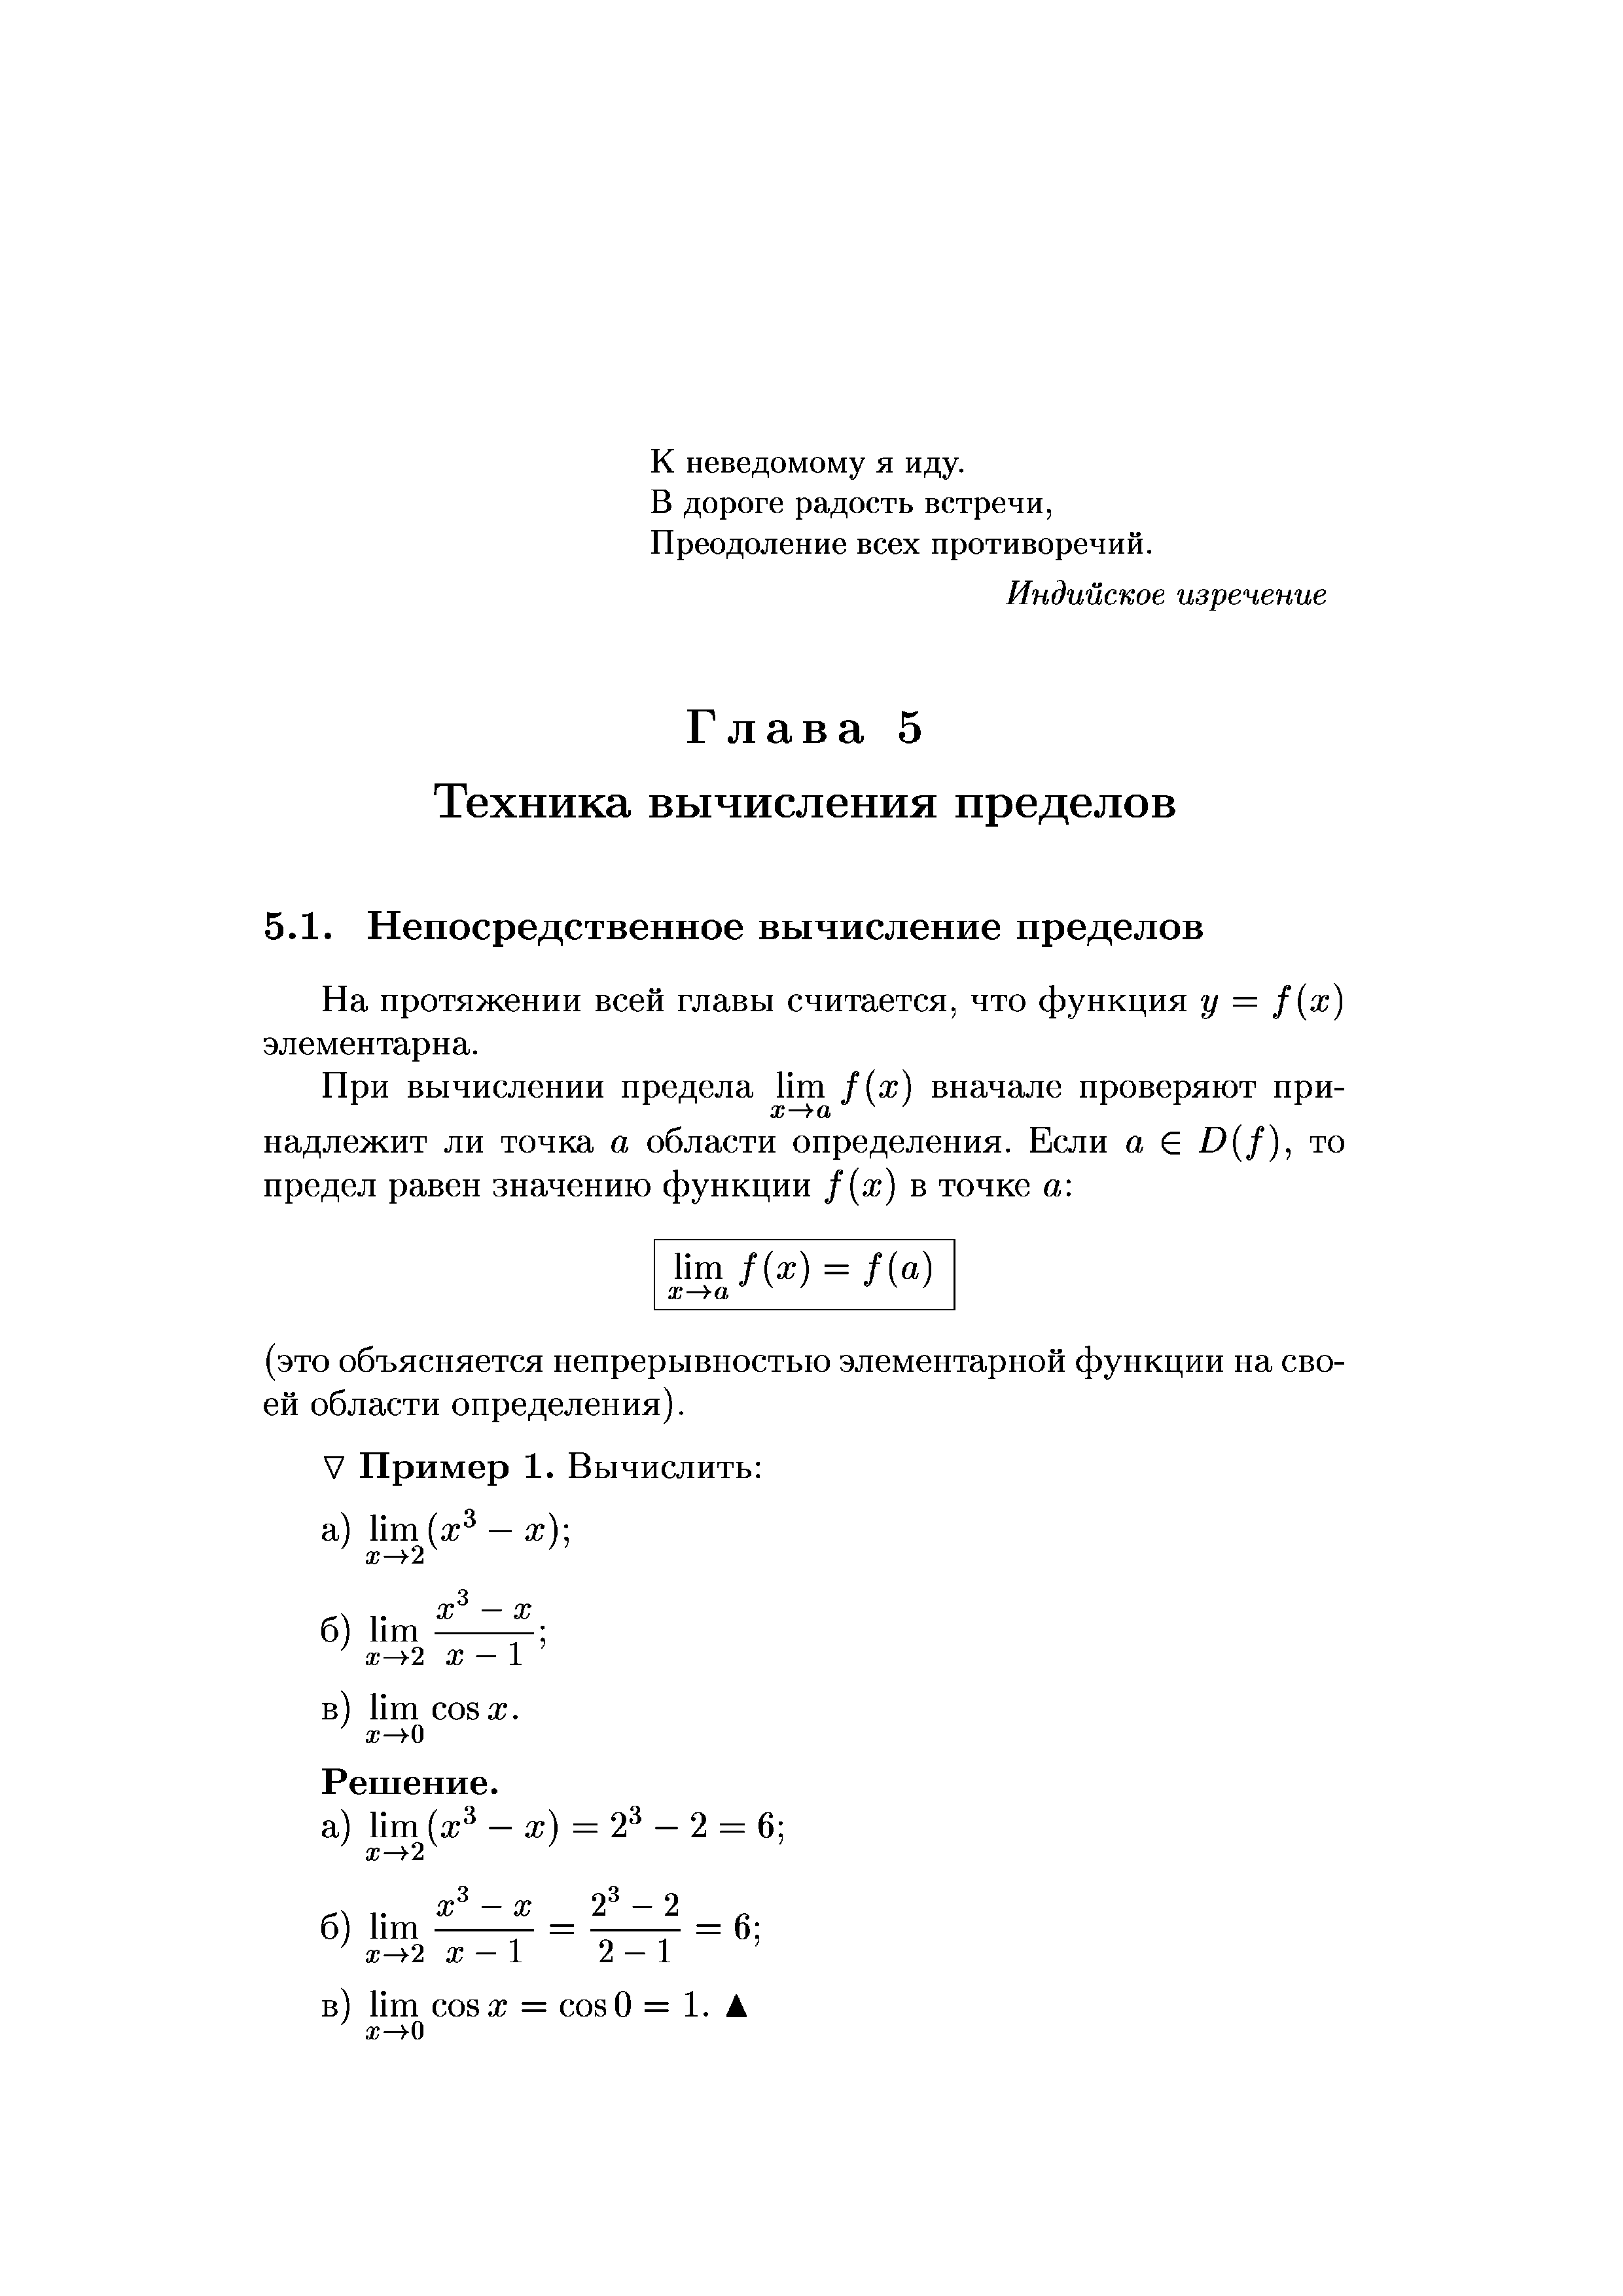 На протяжении всей главы считается, что функция у = f(x) элементарна.
